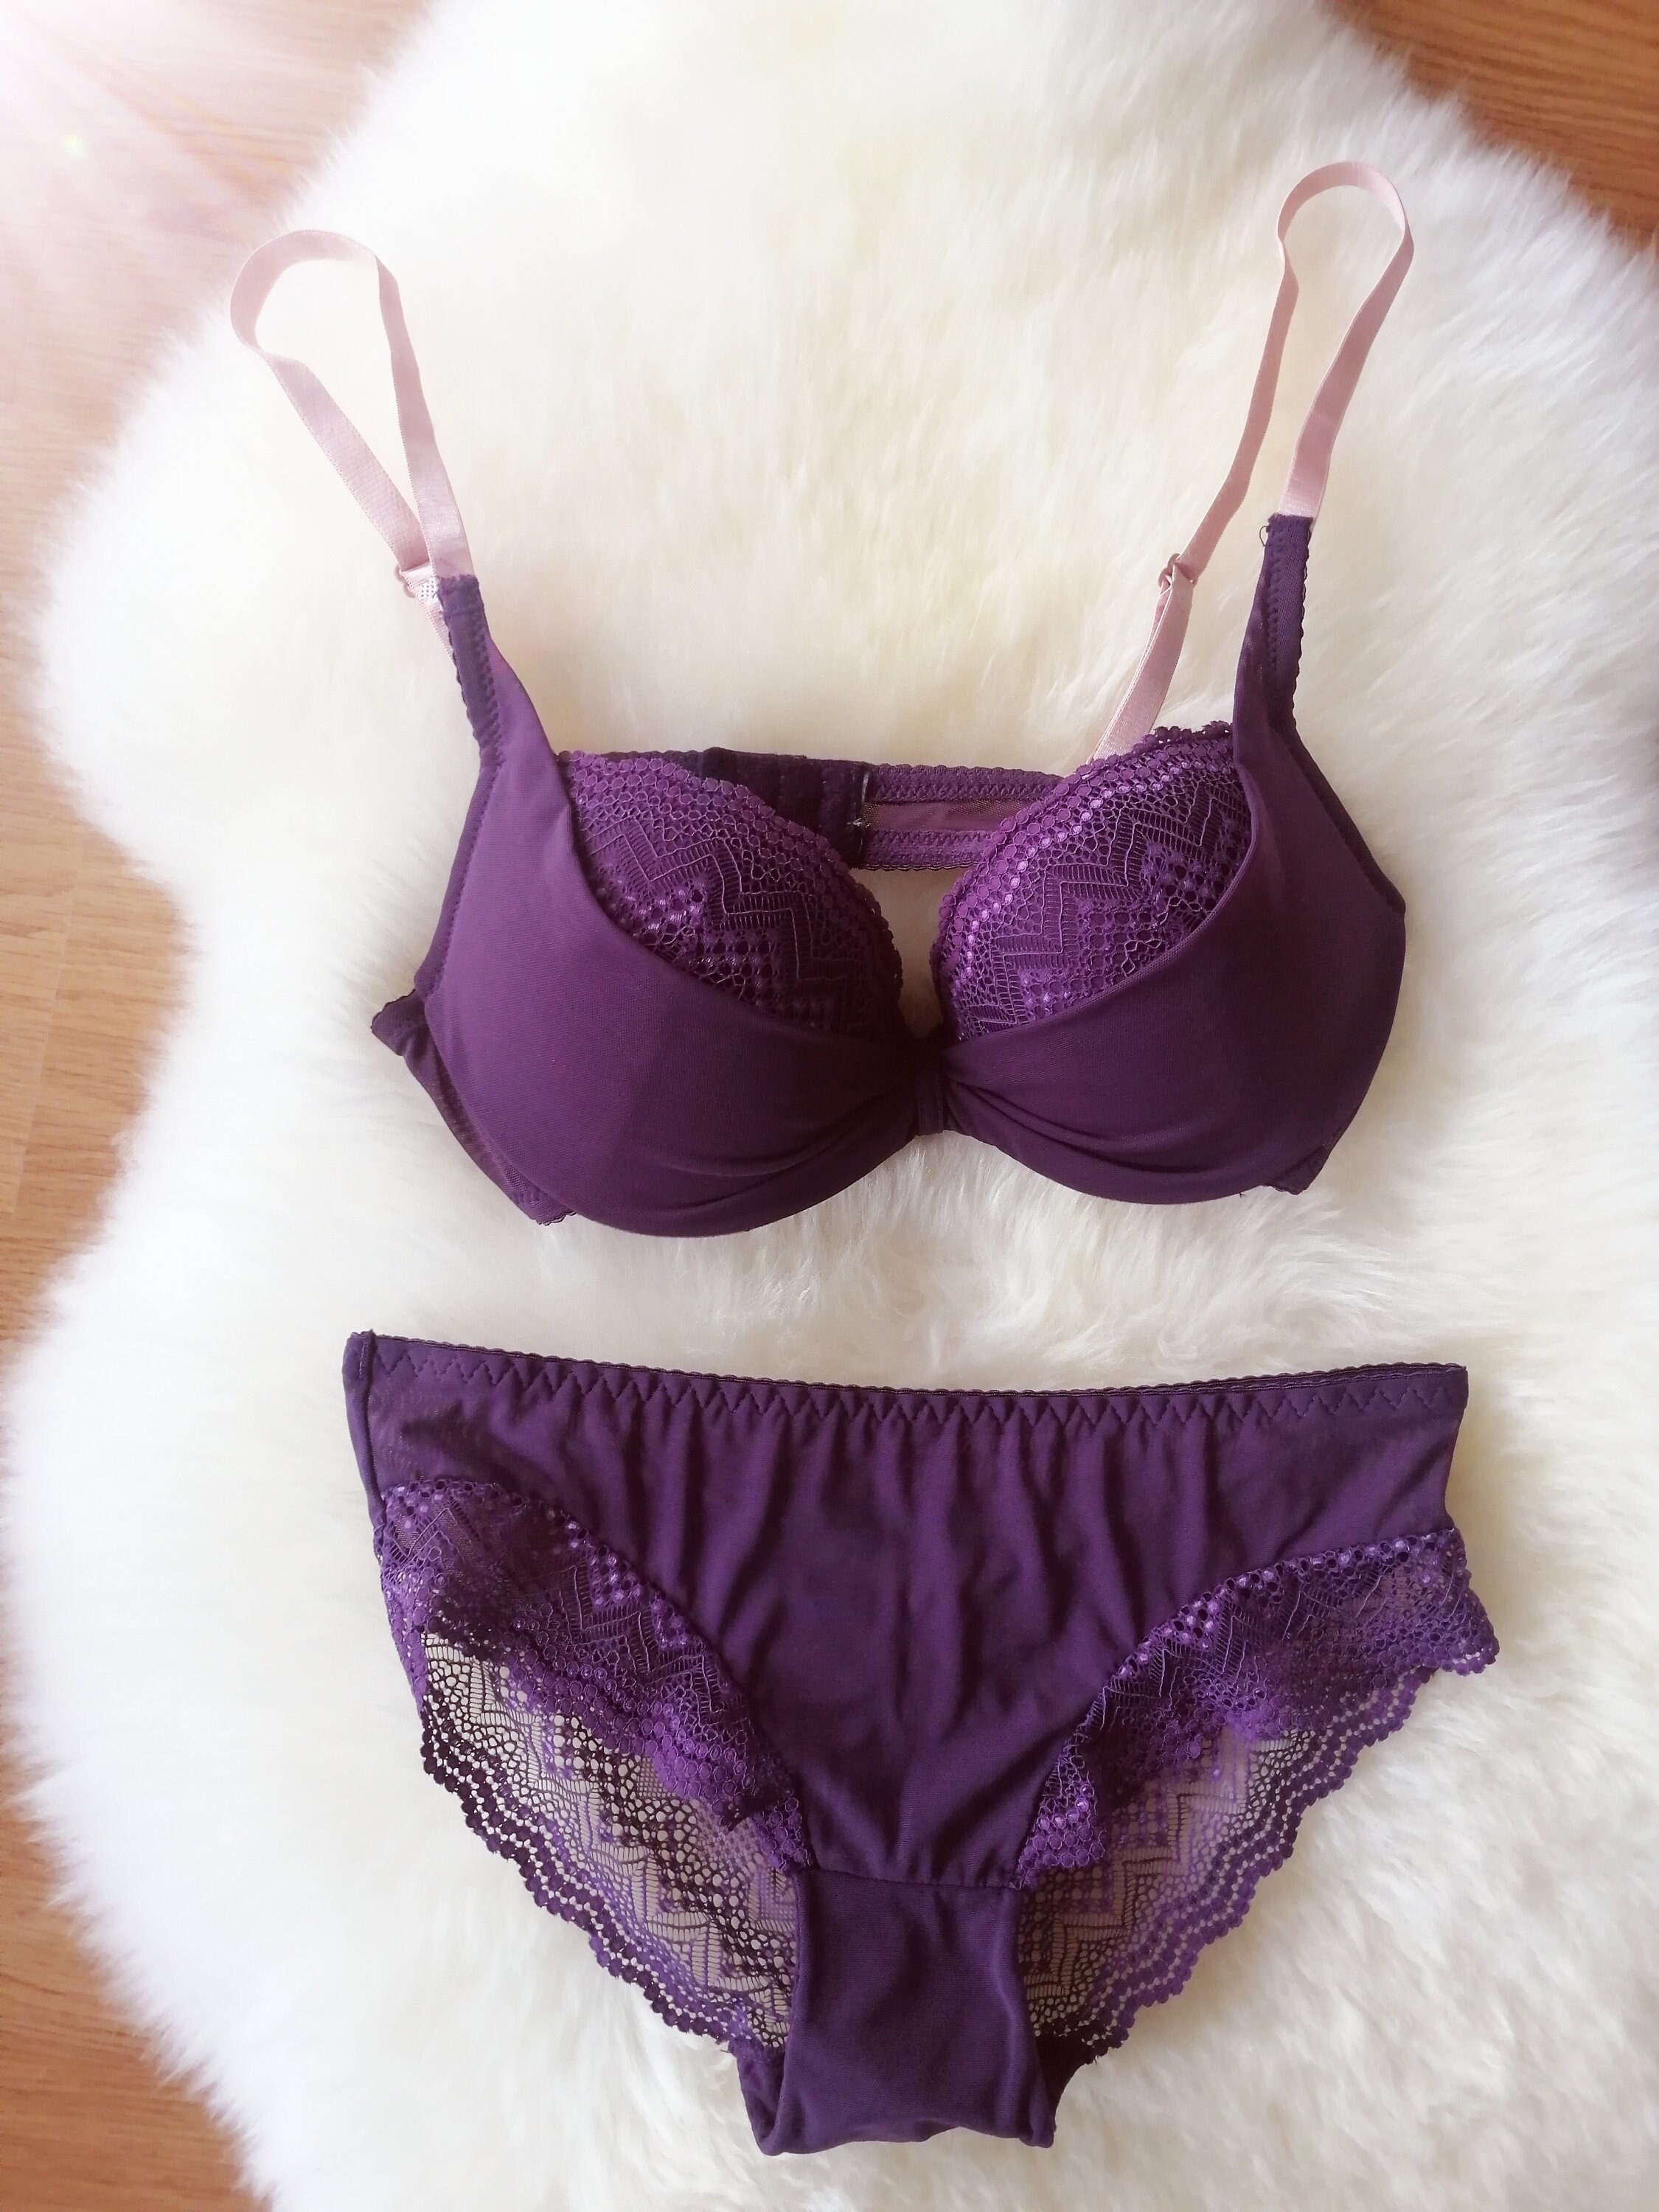 Buy Purple Bras for Women by SHYAWAY Online